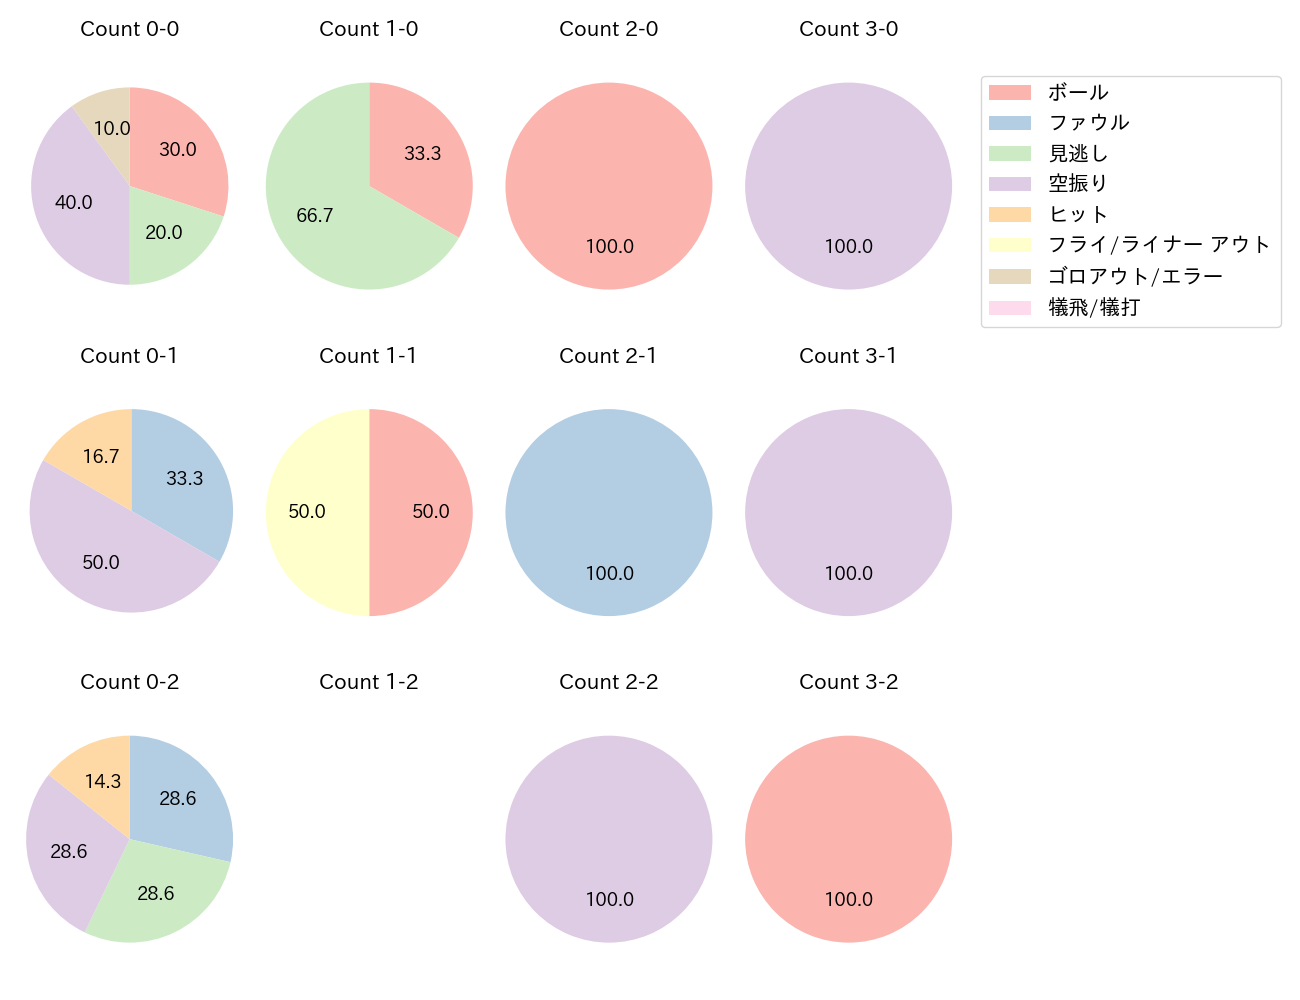 佐藤 直樹の球数分布(2022年8月)